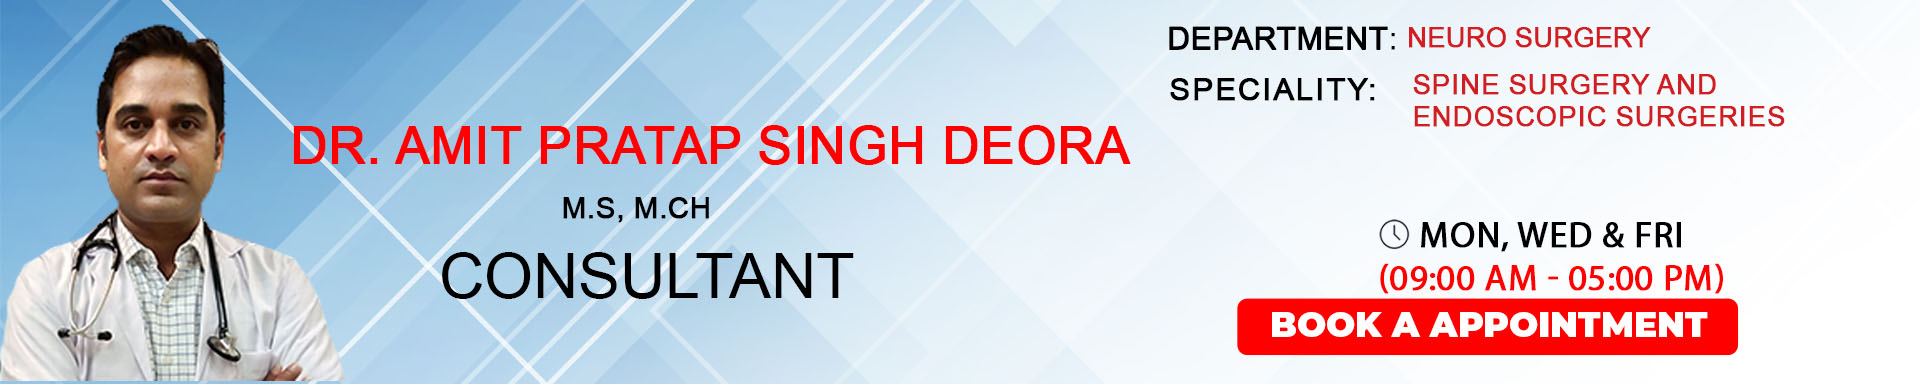 Dr. Amit Pratap Singh Deora